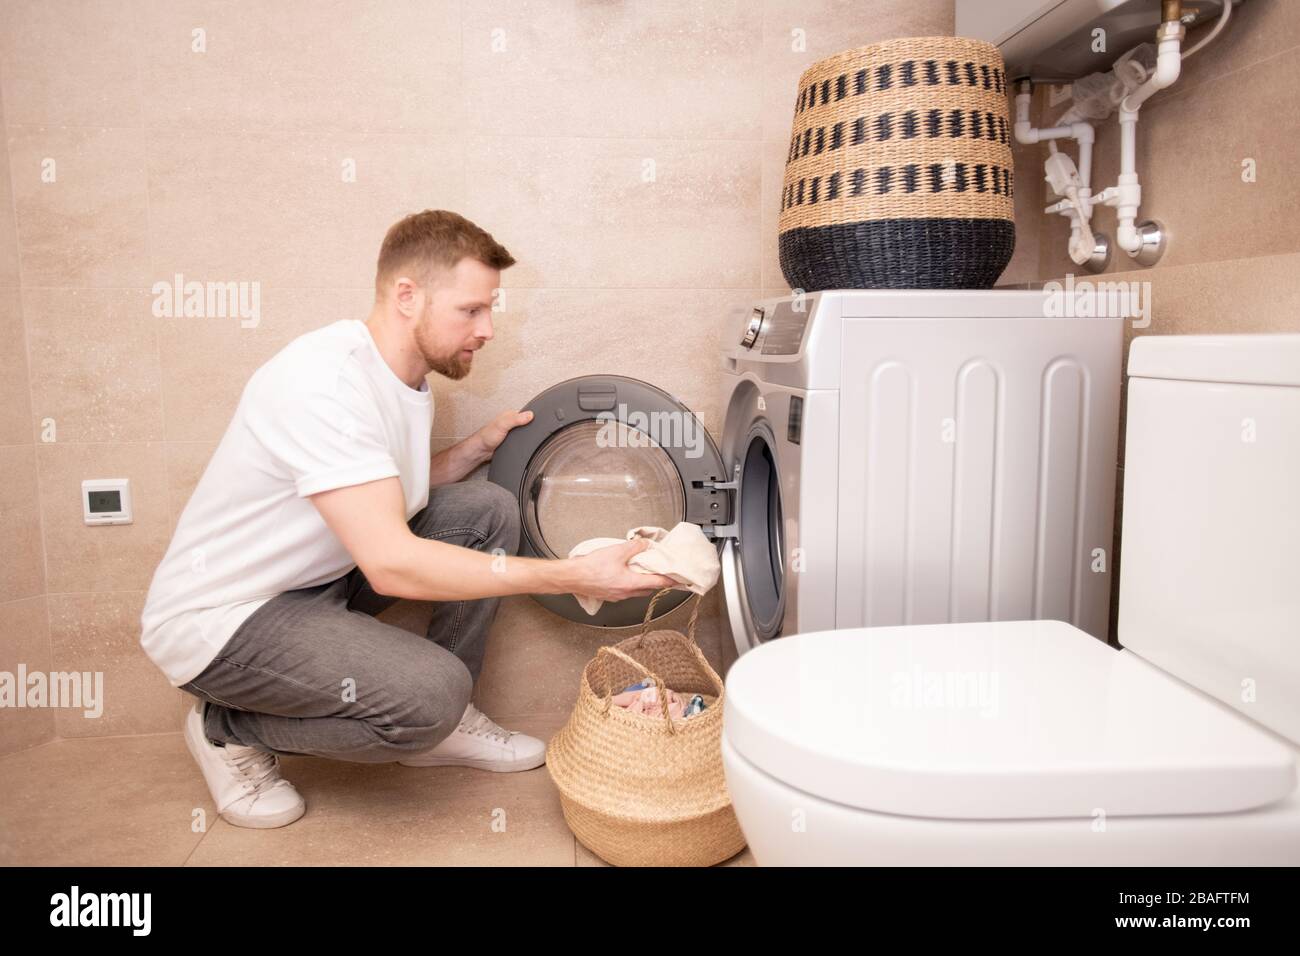 Jeune homme prenant la serviette sale du panier et les mettre dans la machine à laver tout en squatant contre le mur dans la salle de bains Banque D'Images